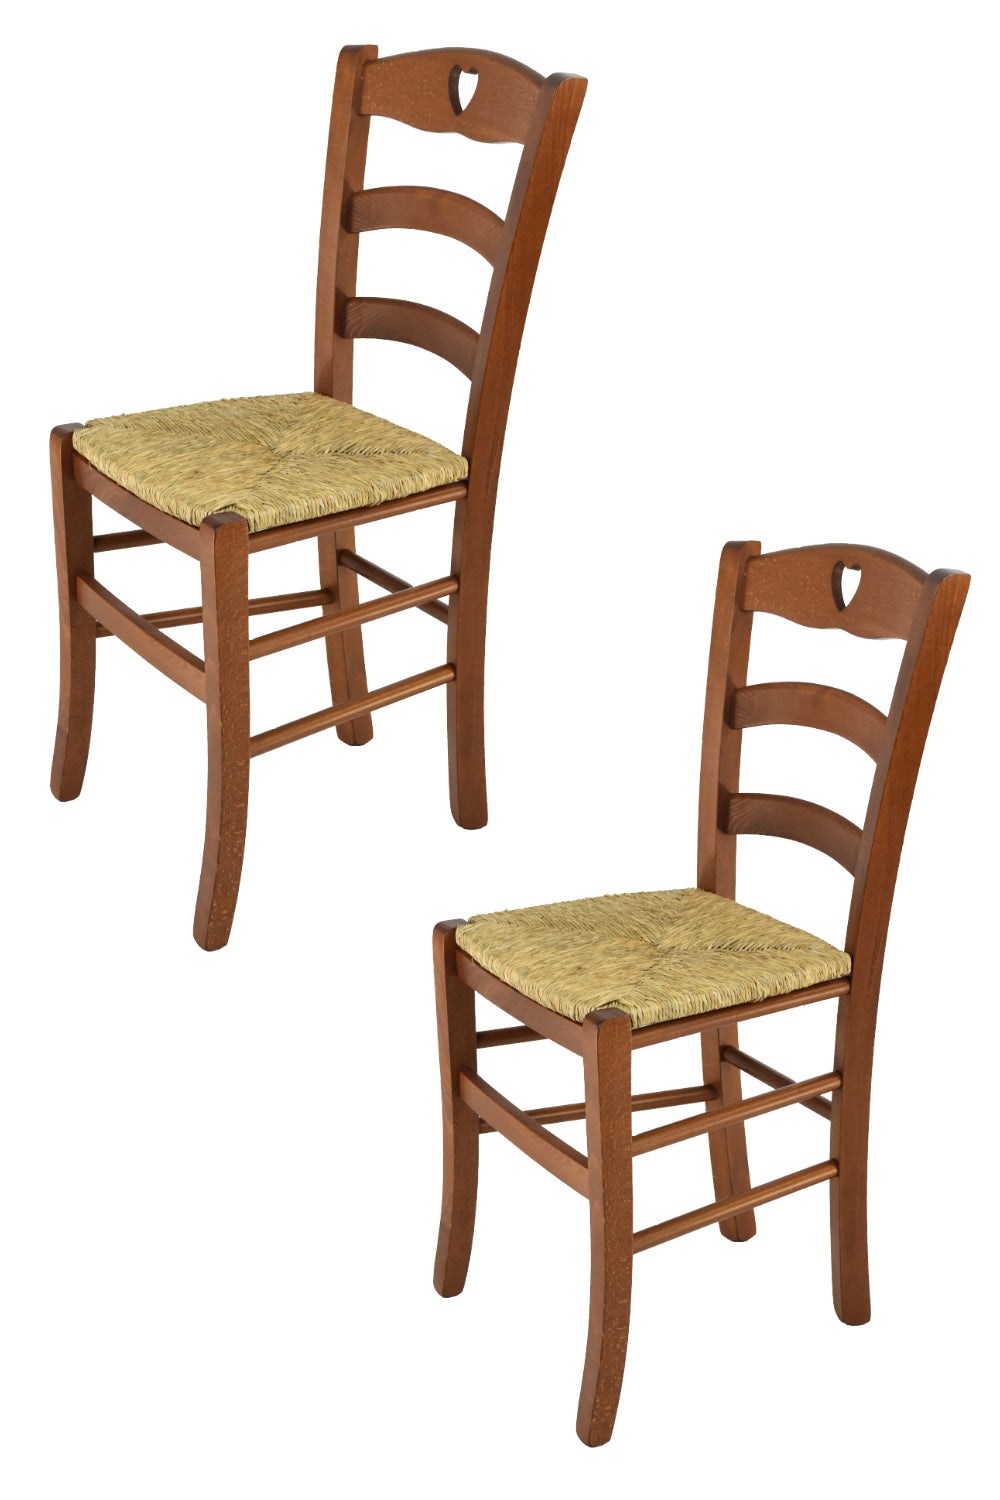 Tommychairs - Set 2 sillas de Cocina y Comedor Cuore, Estructura en Madera de Haya Color Nogal claro y Asiento en Paja